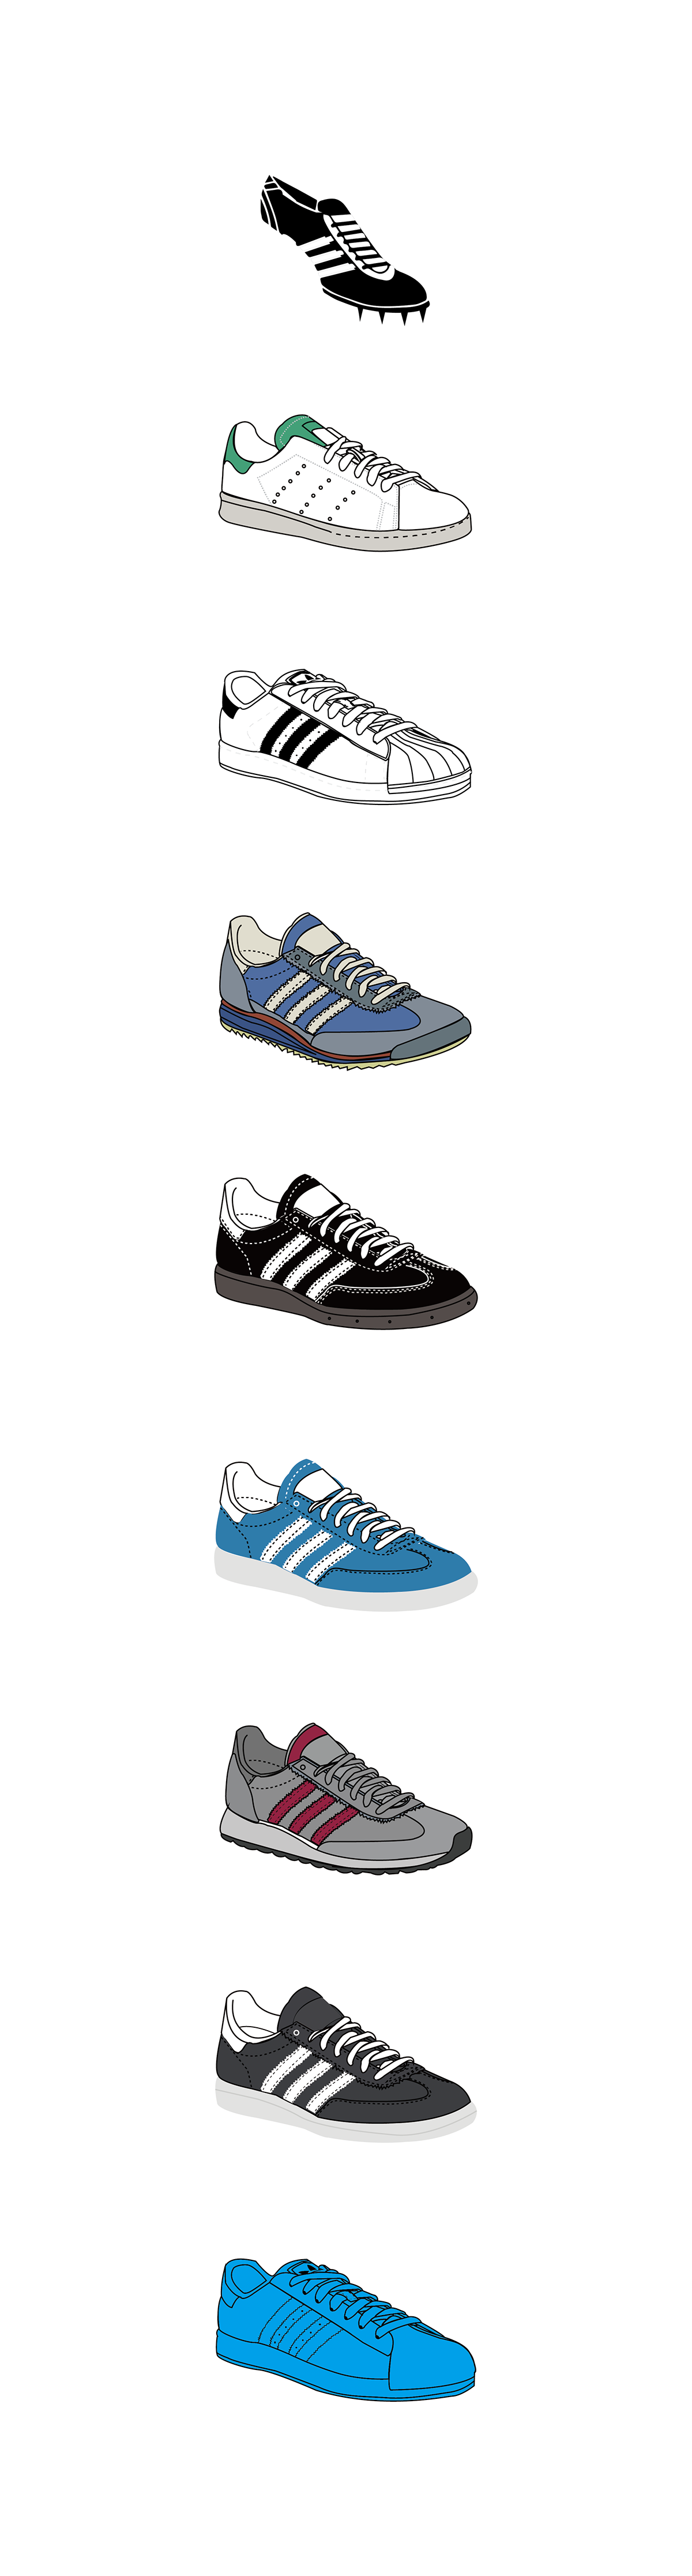 adidas shoe timeline